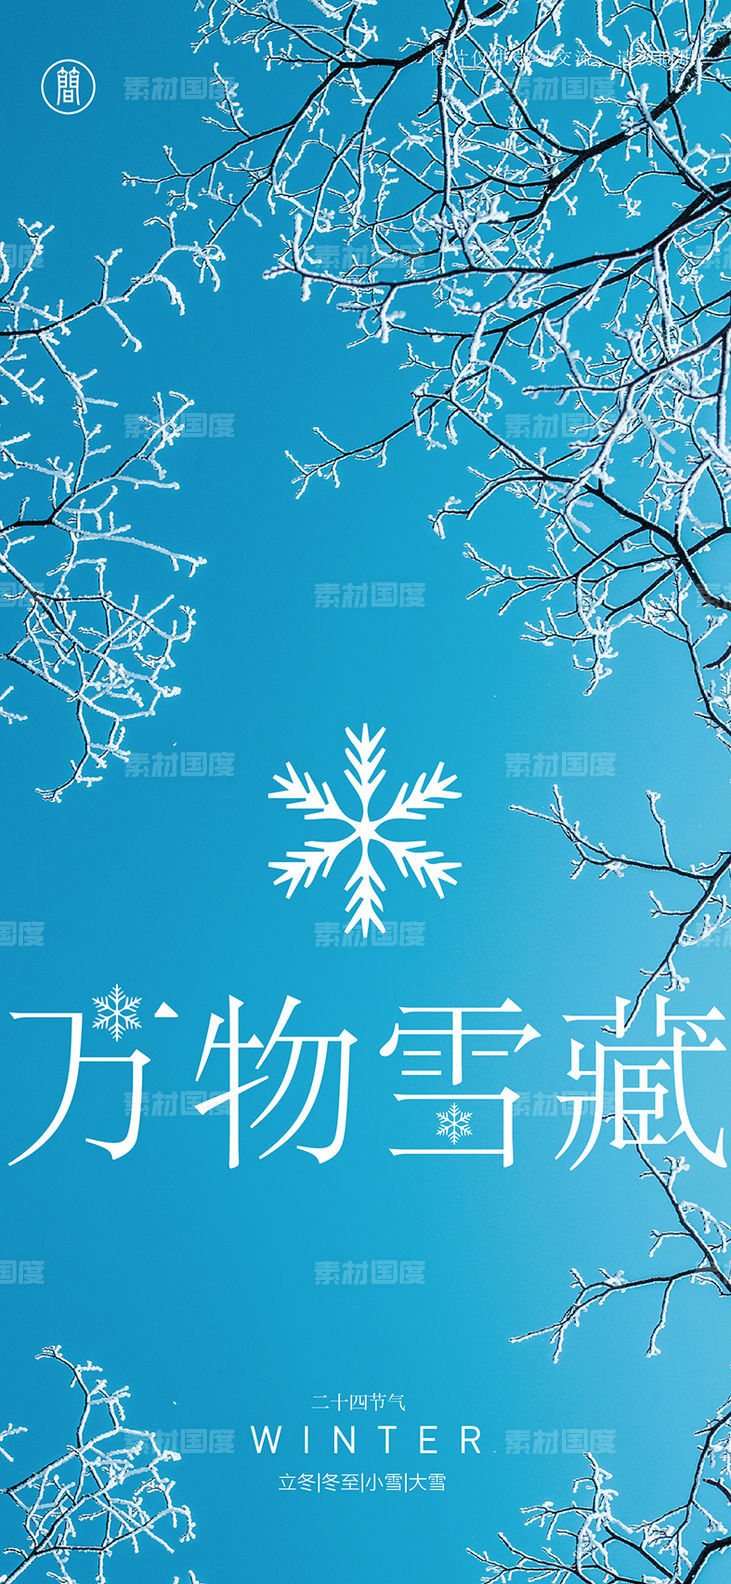 冬至 雪花 节日节气 立冬